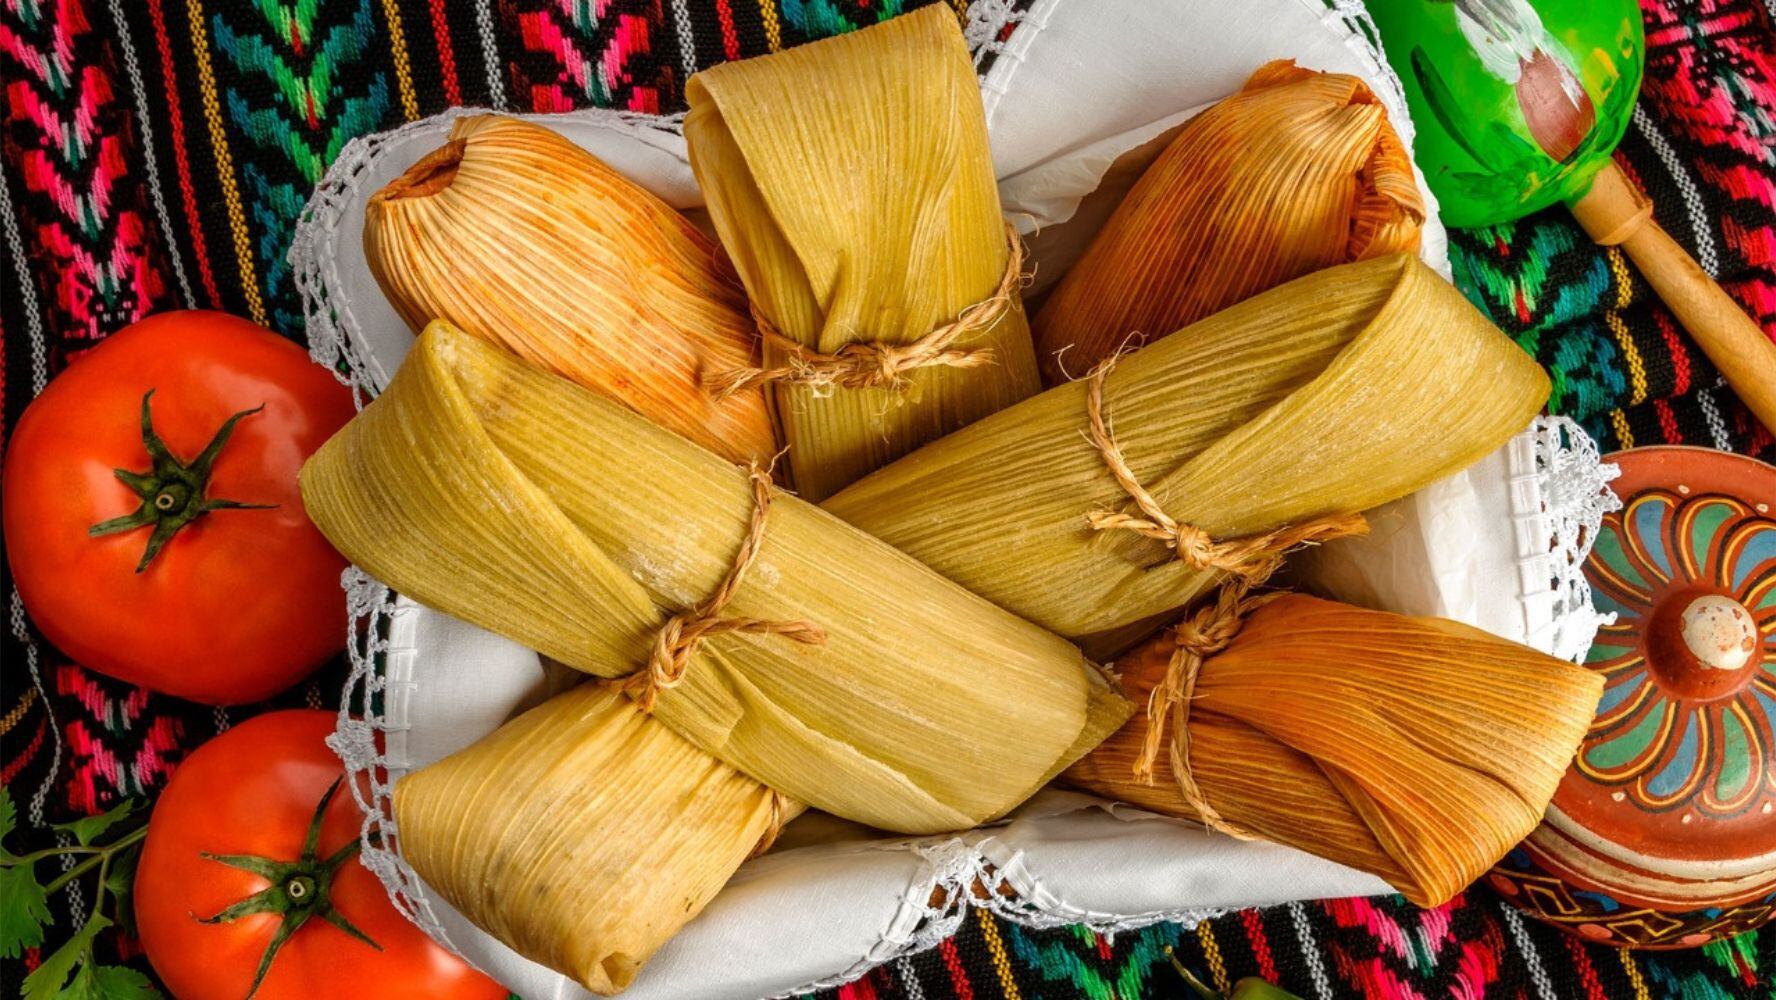 En marco del Día de la Candelaria, la CDMX tendrá algunas celebraciones gastronómicas con tamales. (Foto: Shutterstock)